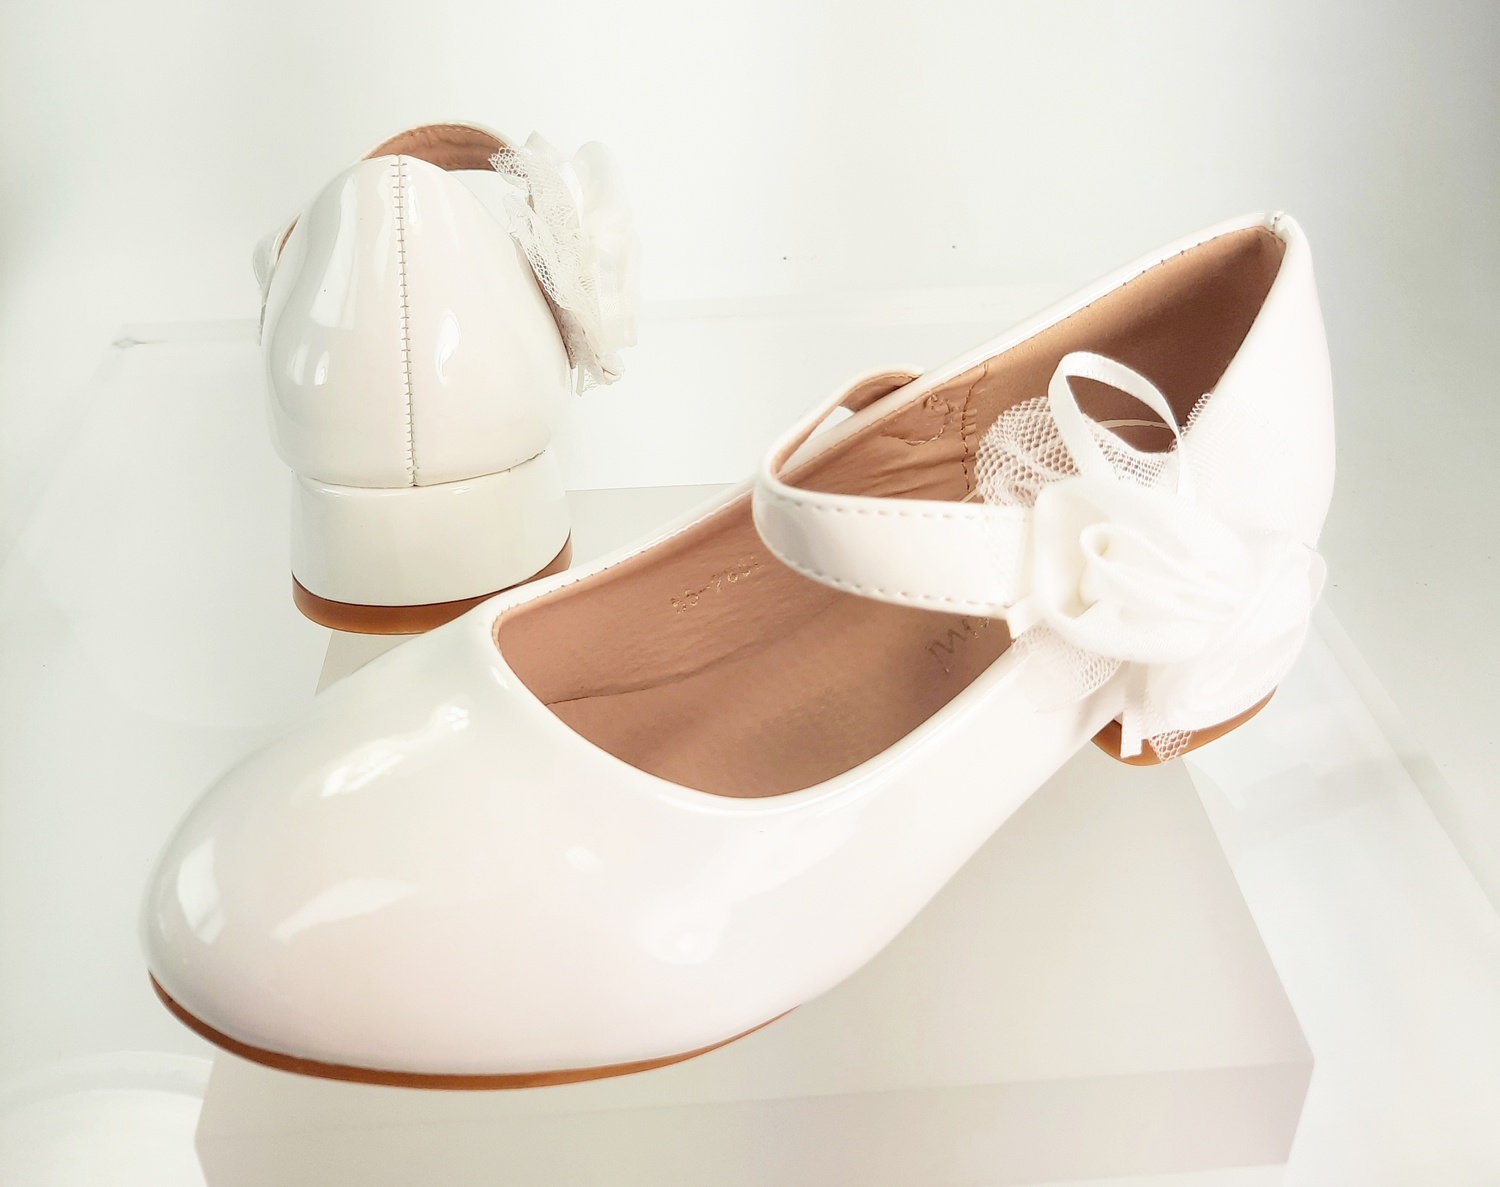 Meisjesschoenen Meisjesschoen - Bruidsmeisjes schoenen - lak - wit - bloem